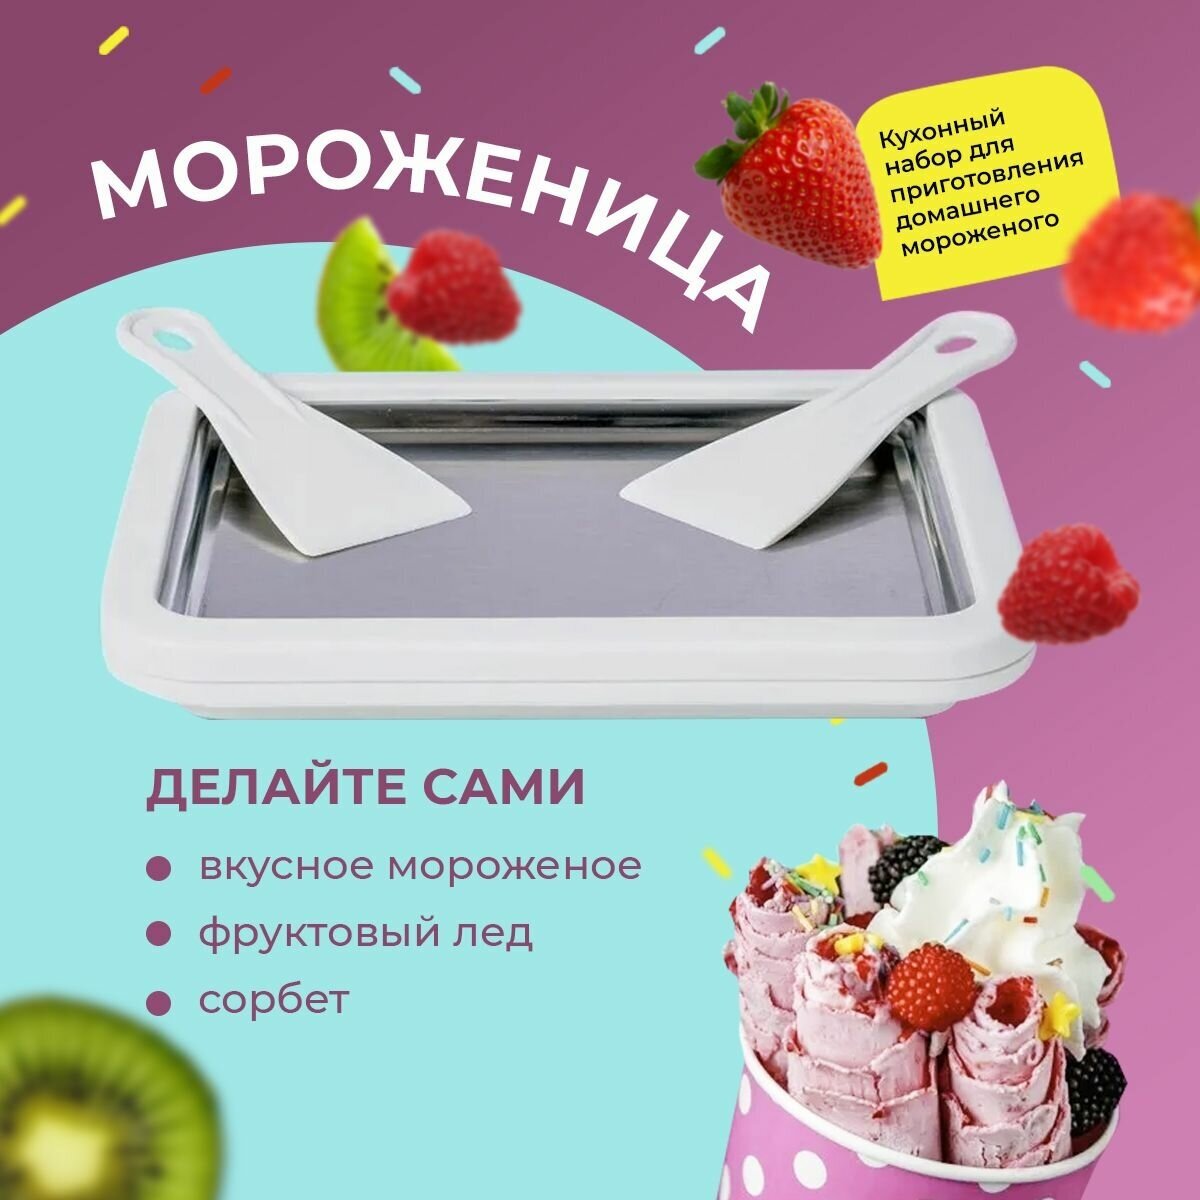 Набор для приготовления домашнего мороженого /мороженица многофункциональная механическая.